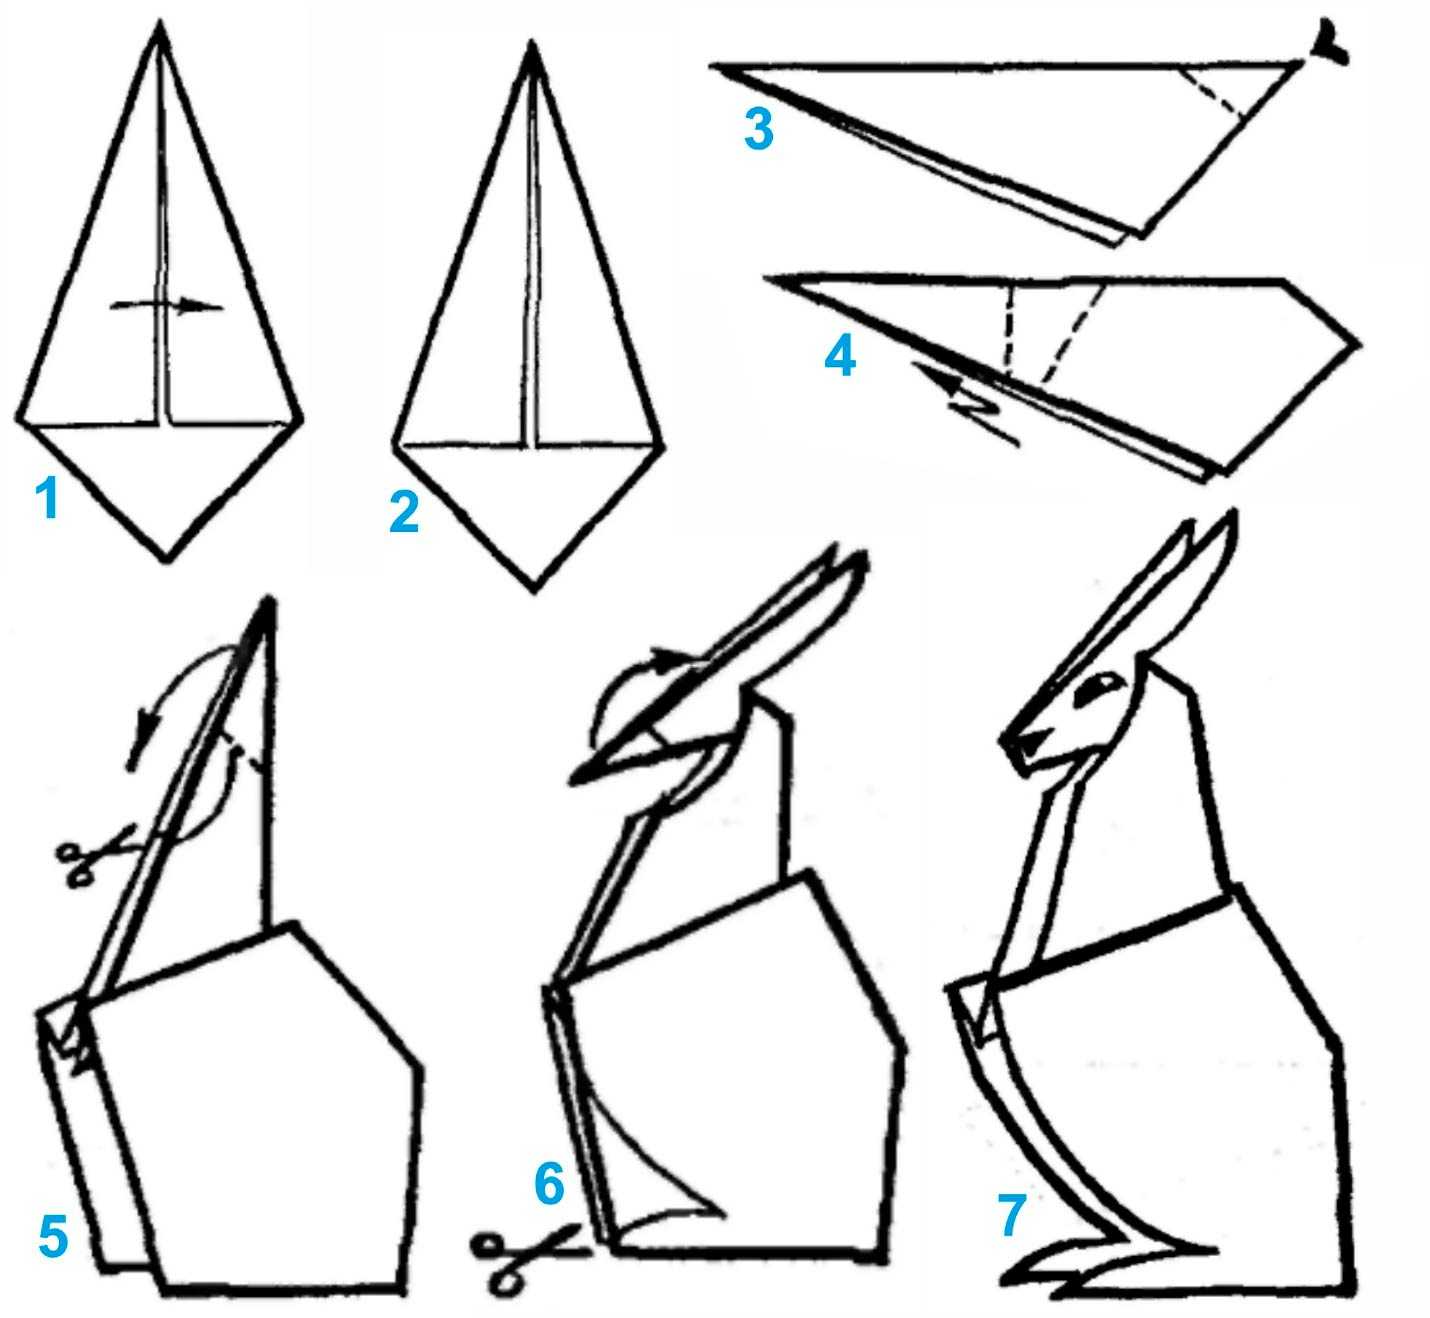 Модульное оригами - лебедь (инструкция, схемы, видео)